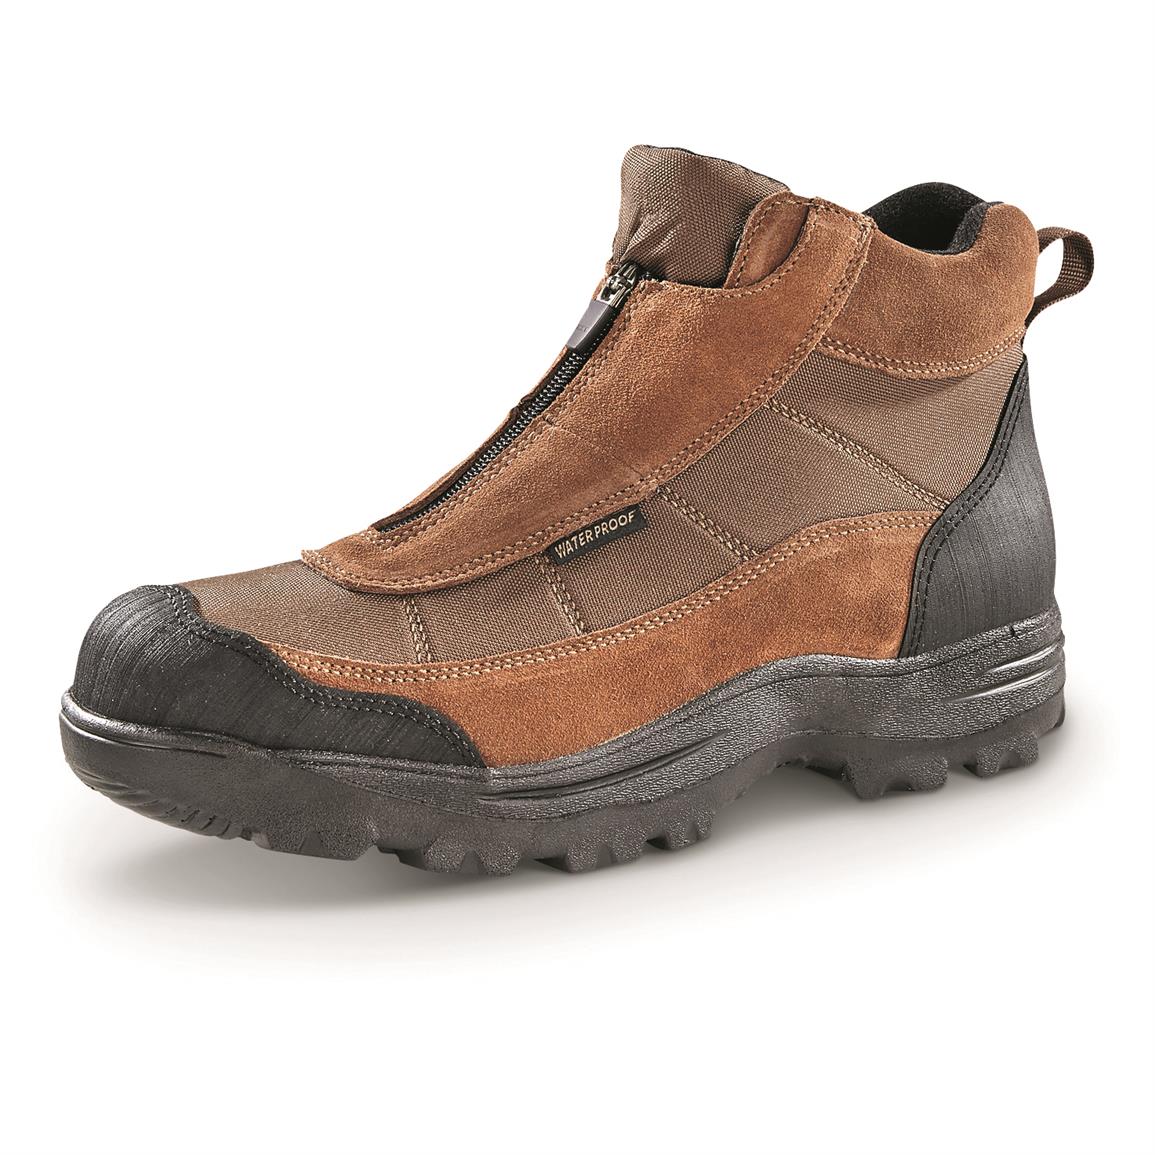 Guide Gear Men's Silvercliff II Mid Waterproof Hiking Boots, Brown